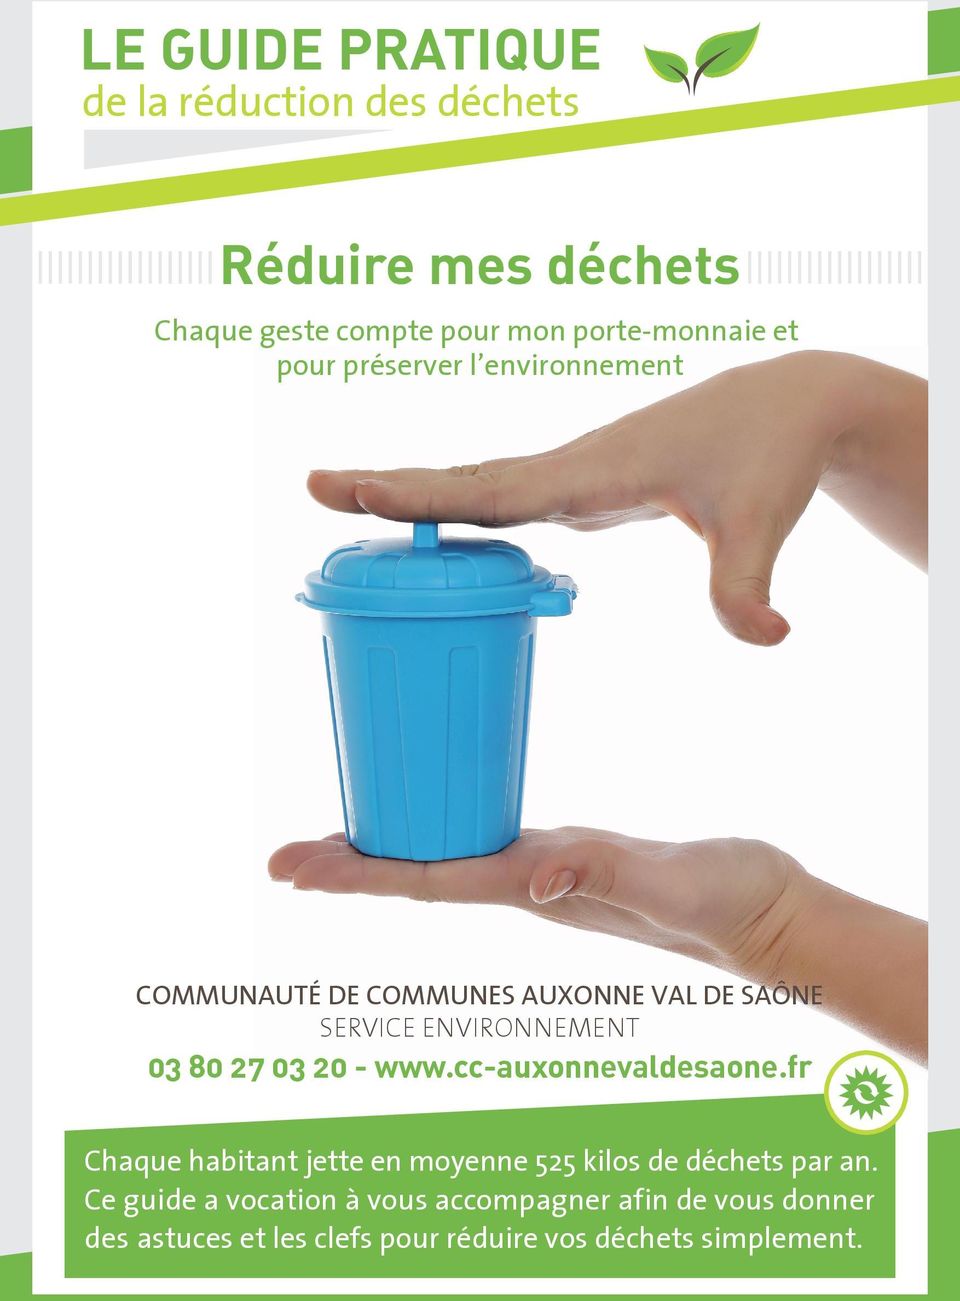 03 20 - www.cc-auxonnevaldesaone.fr Chaque habitant jette en moyenne 525 kilos de déchets par an.